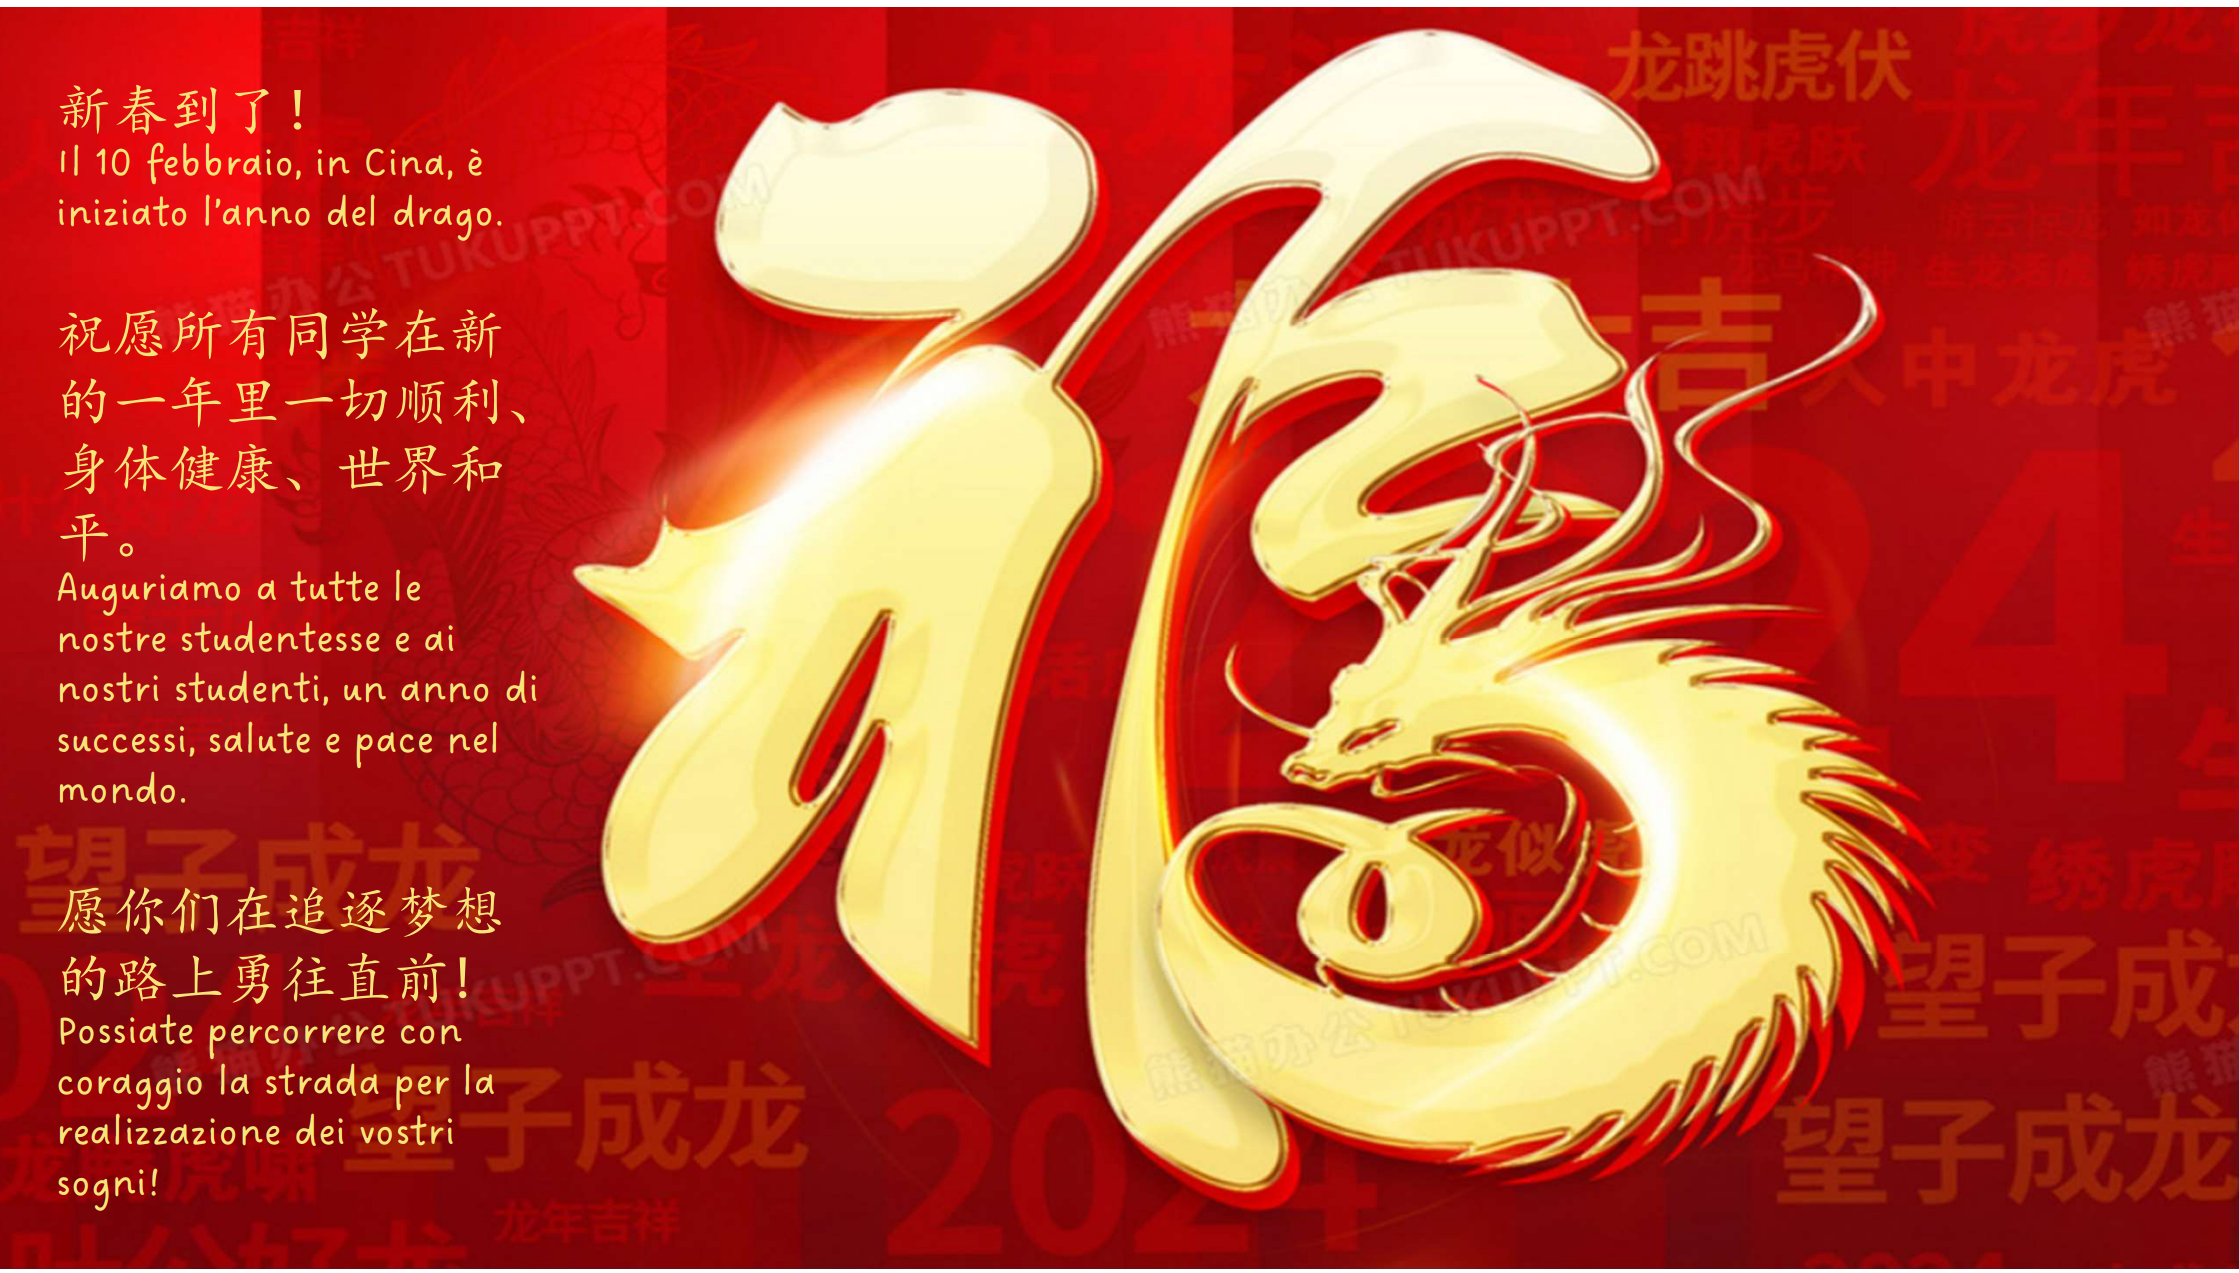 Capodanno cinese anno del drago simbolo di libertà - ITES Luigi